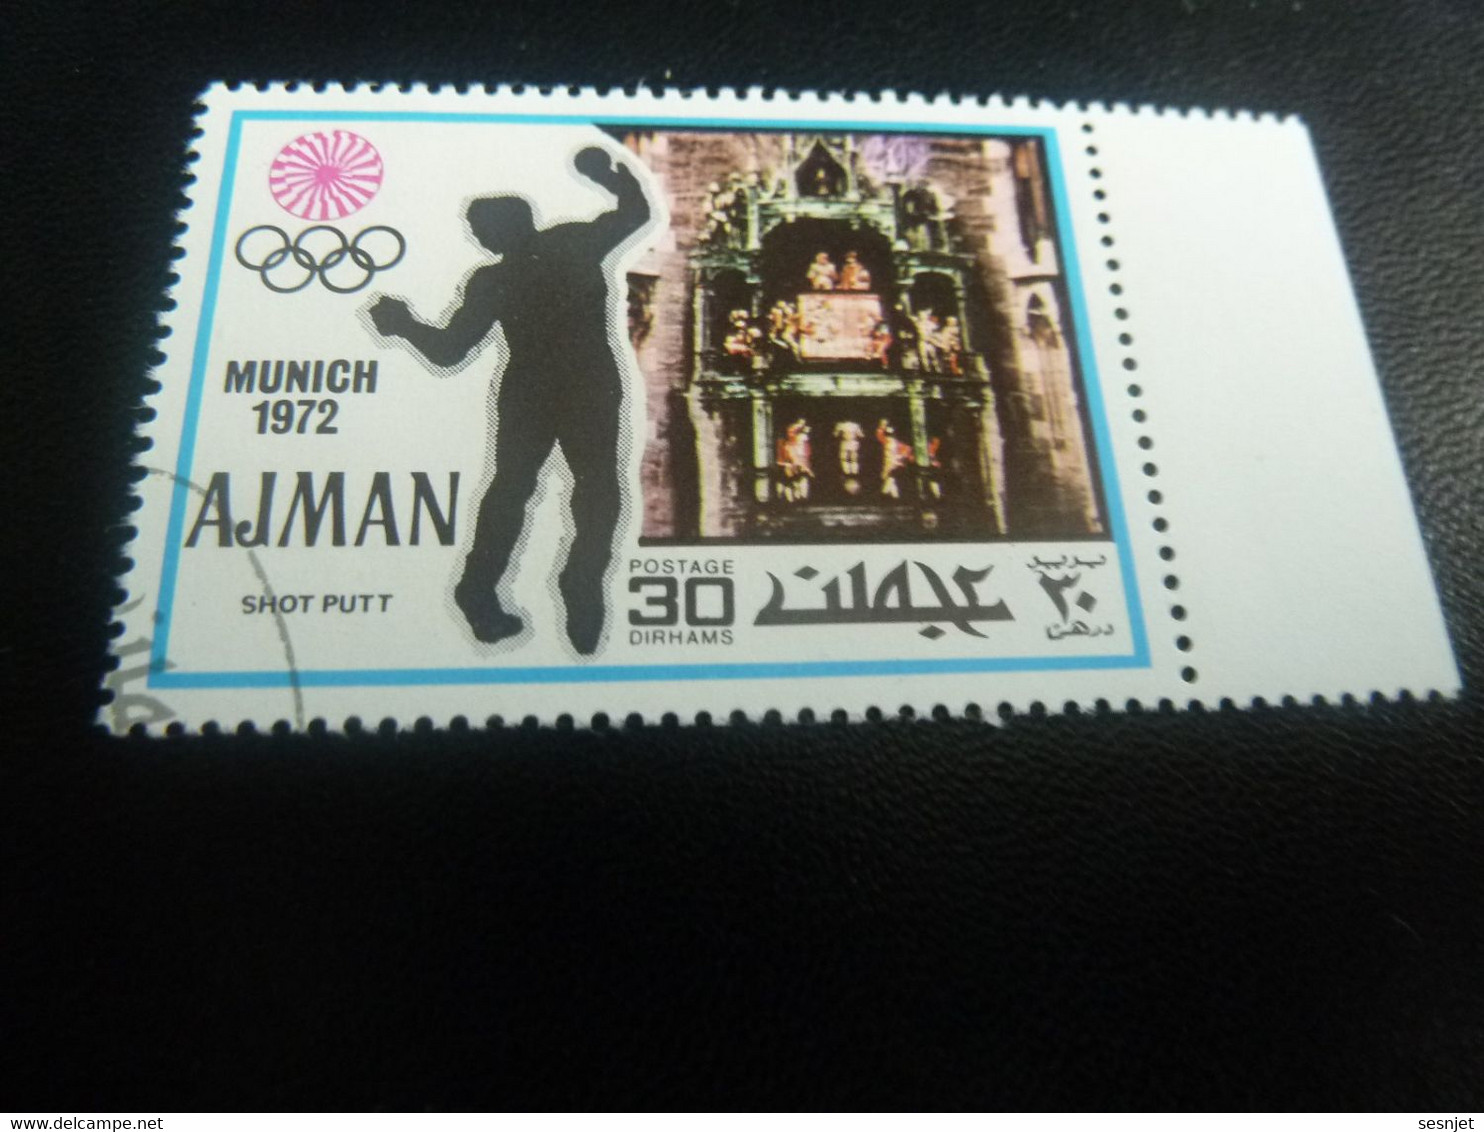 Ajman - Munich - Shot Putt - 30 Dirhams - Postage - Multicolore - Oblitéré - Année 1972 - - Handbal